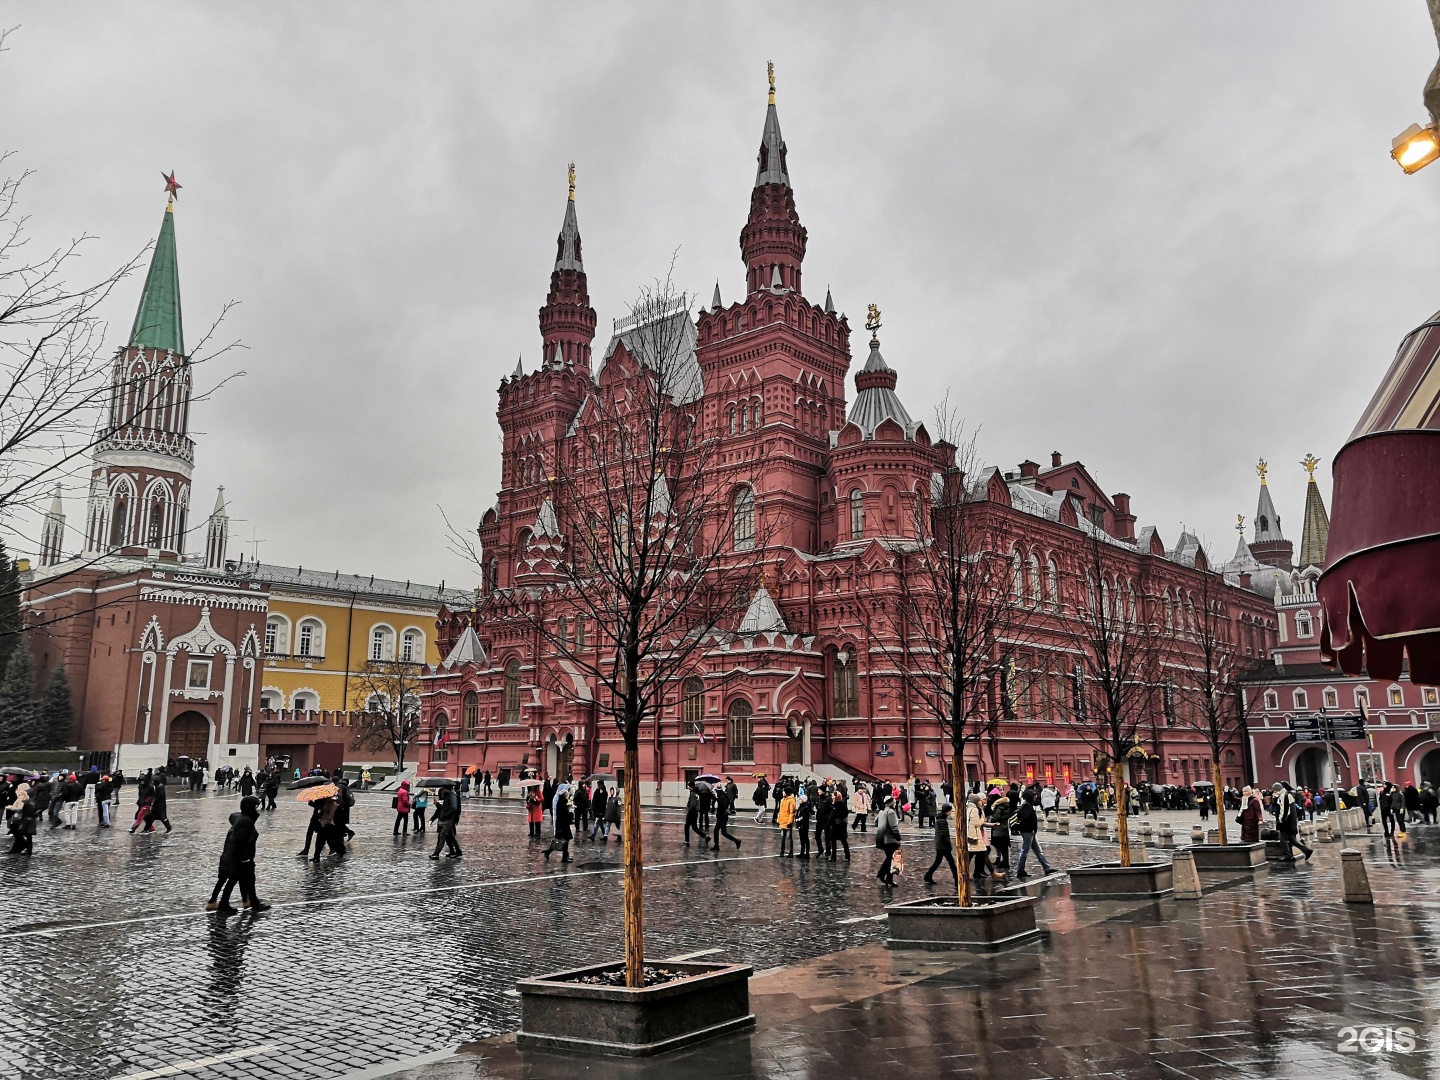 Исторический музей в москве на красной площади